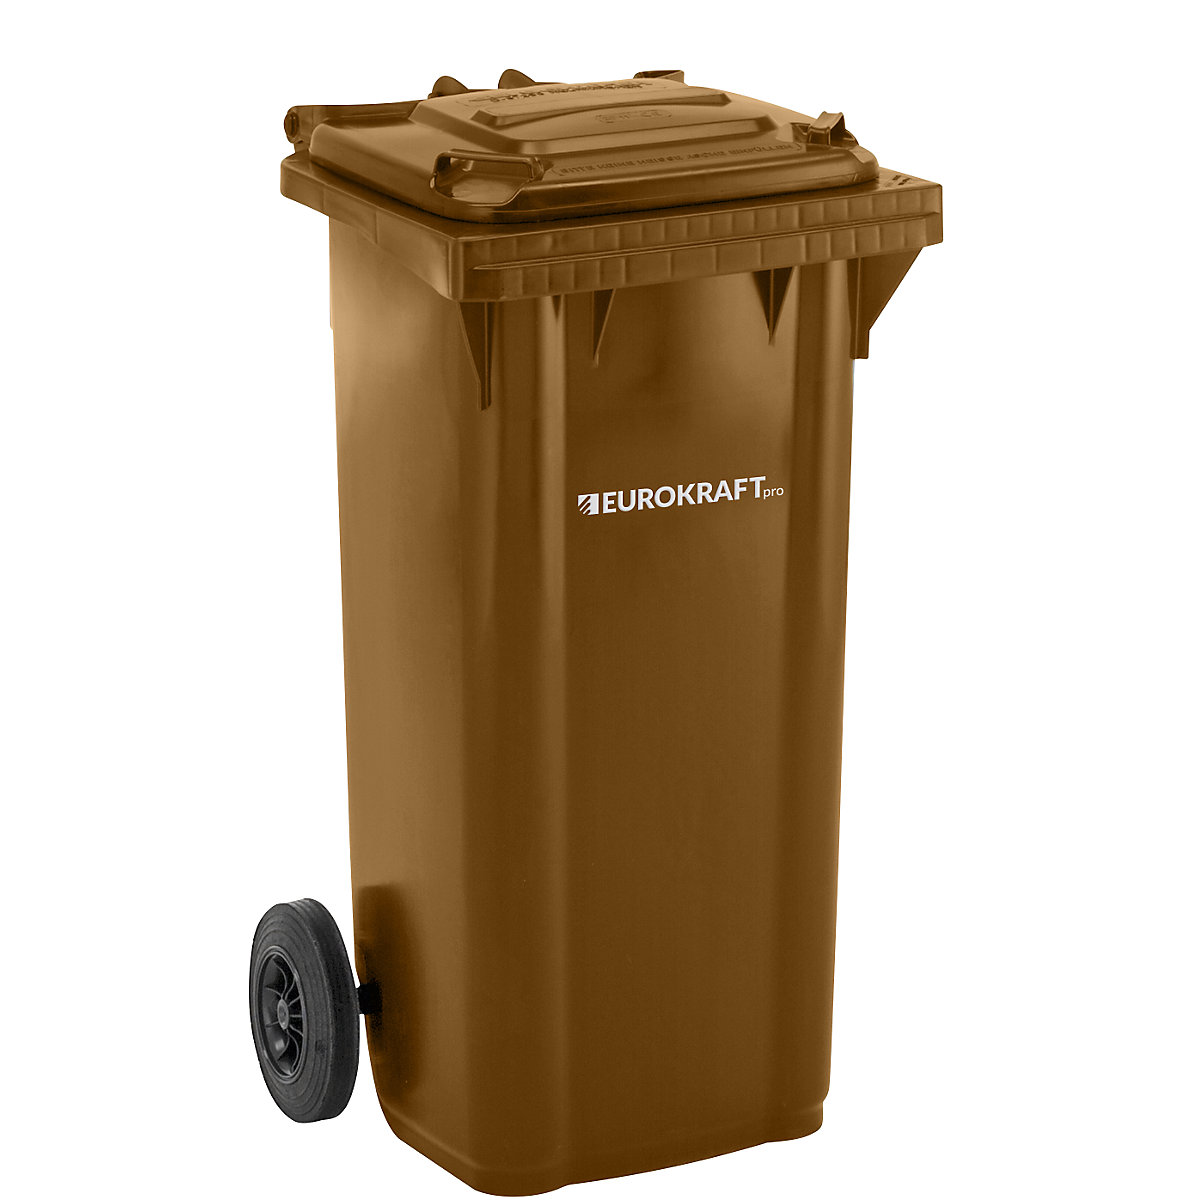 EUROKRAFTpro – Plastic waste bin, DIN EN 840, capacity 120 l, WxHxD 505 x 1005 x 555 mm, brown